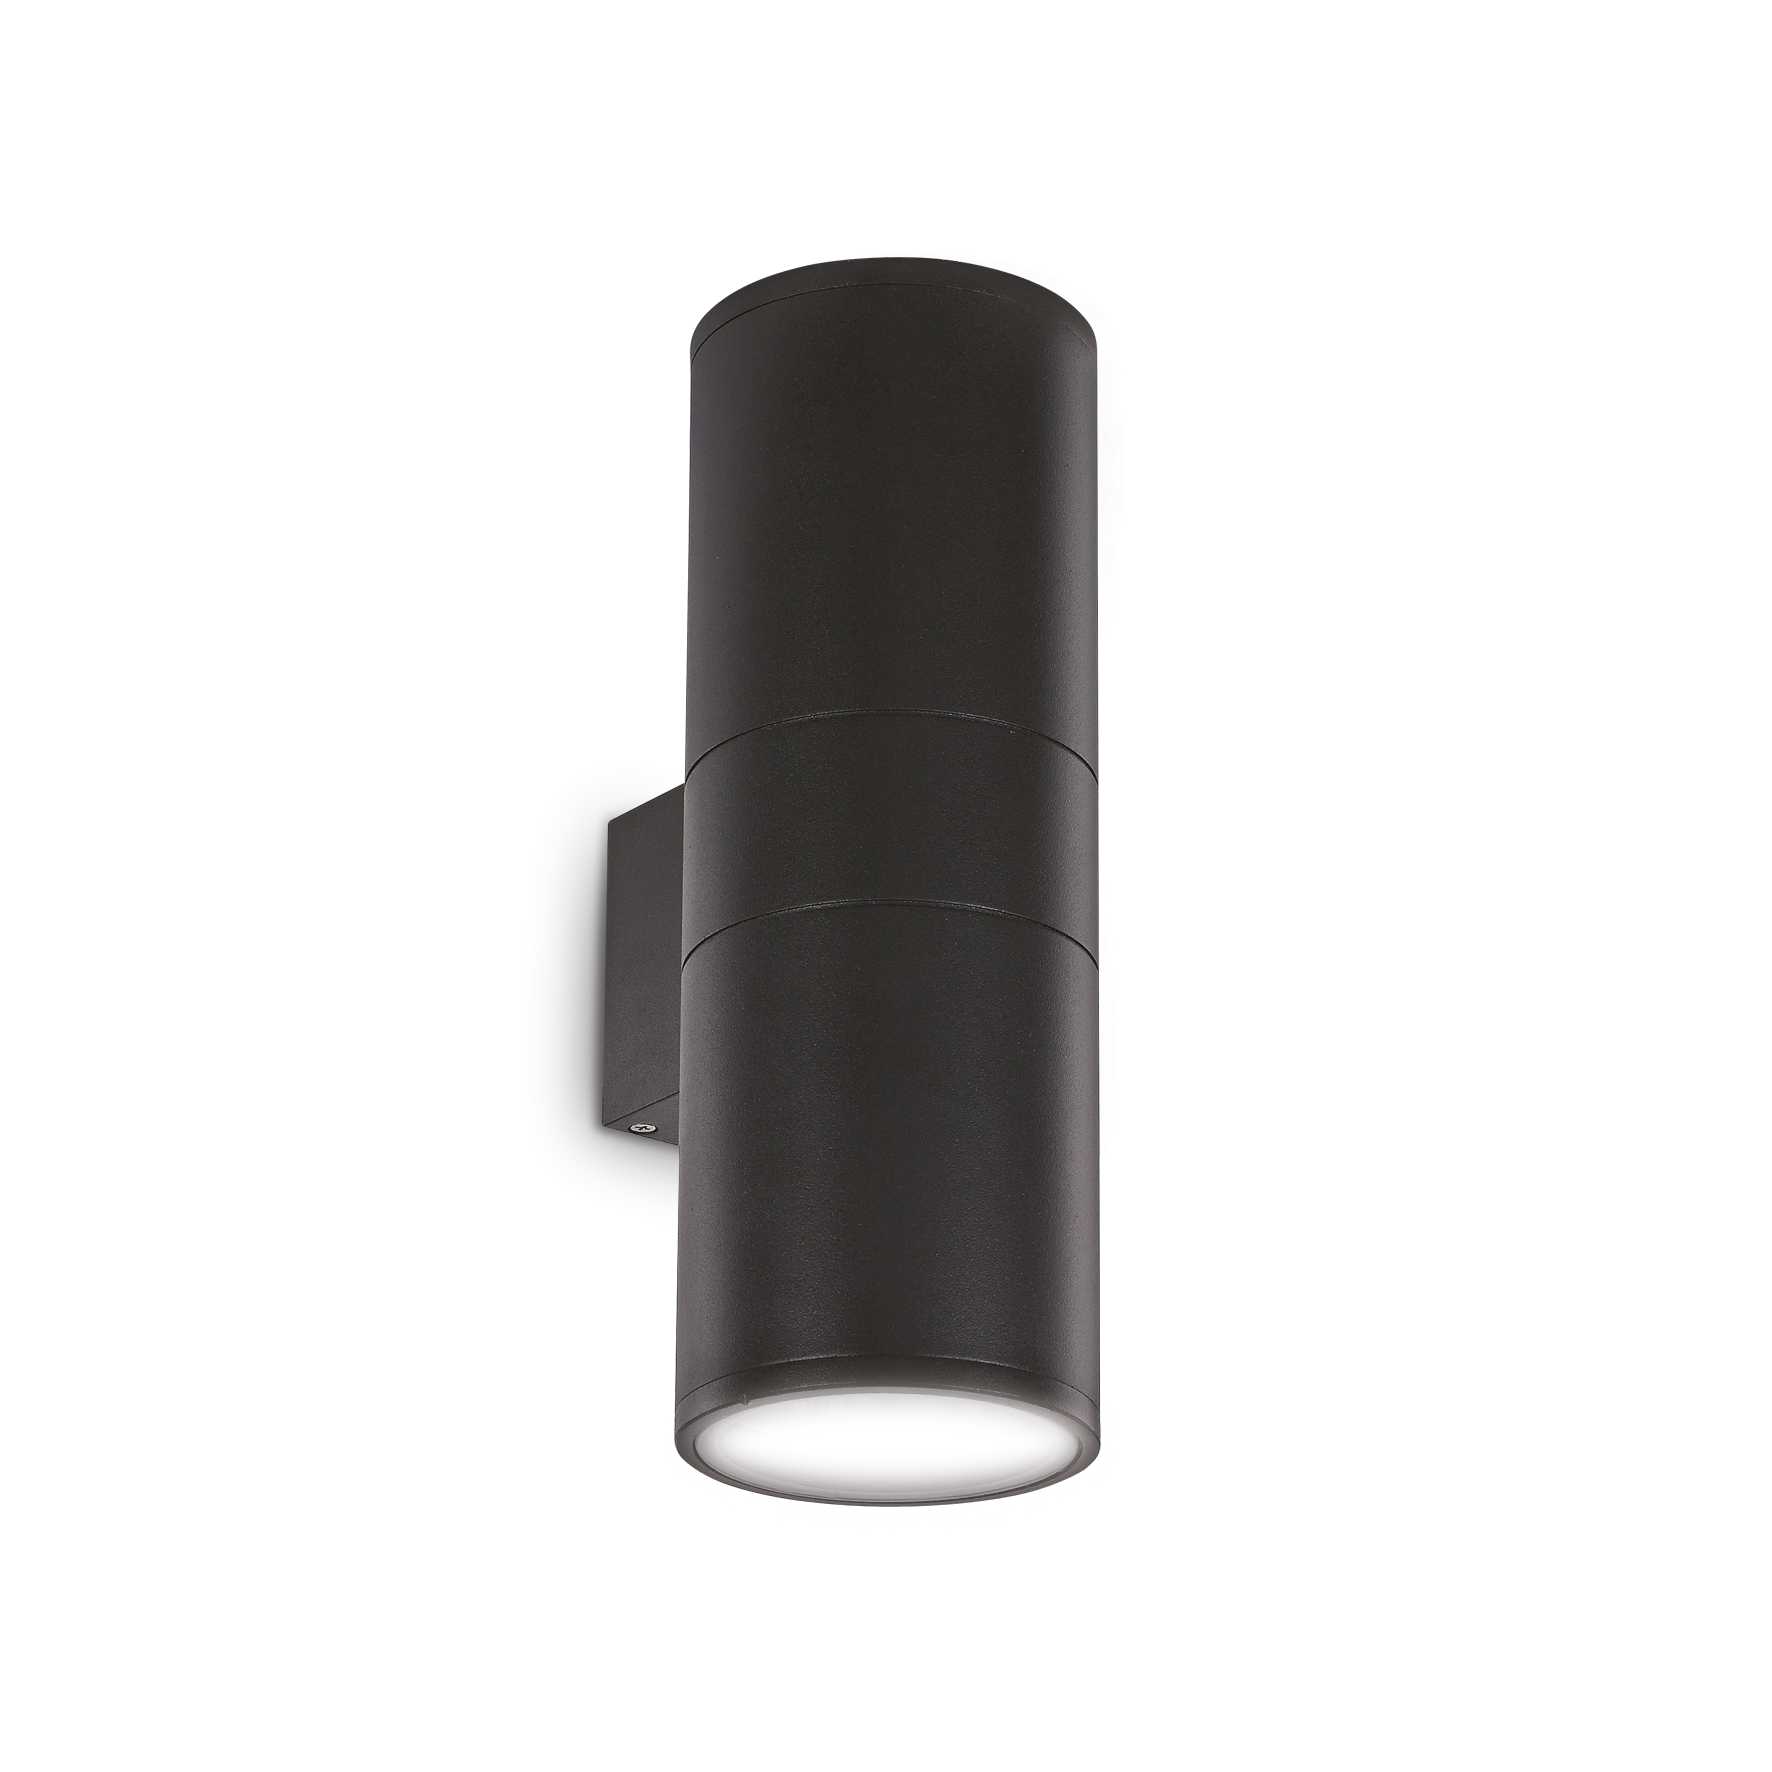 AD hotelska oprema Vanjska zidna lampa Gun ap2 velika- Crne boje slika proizvoda